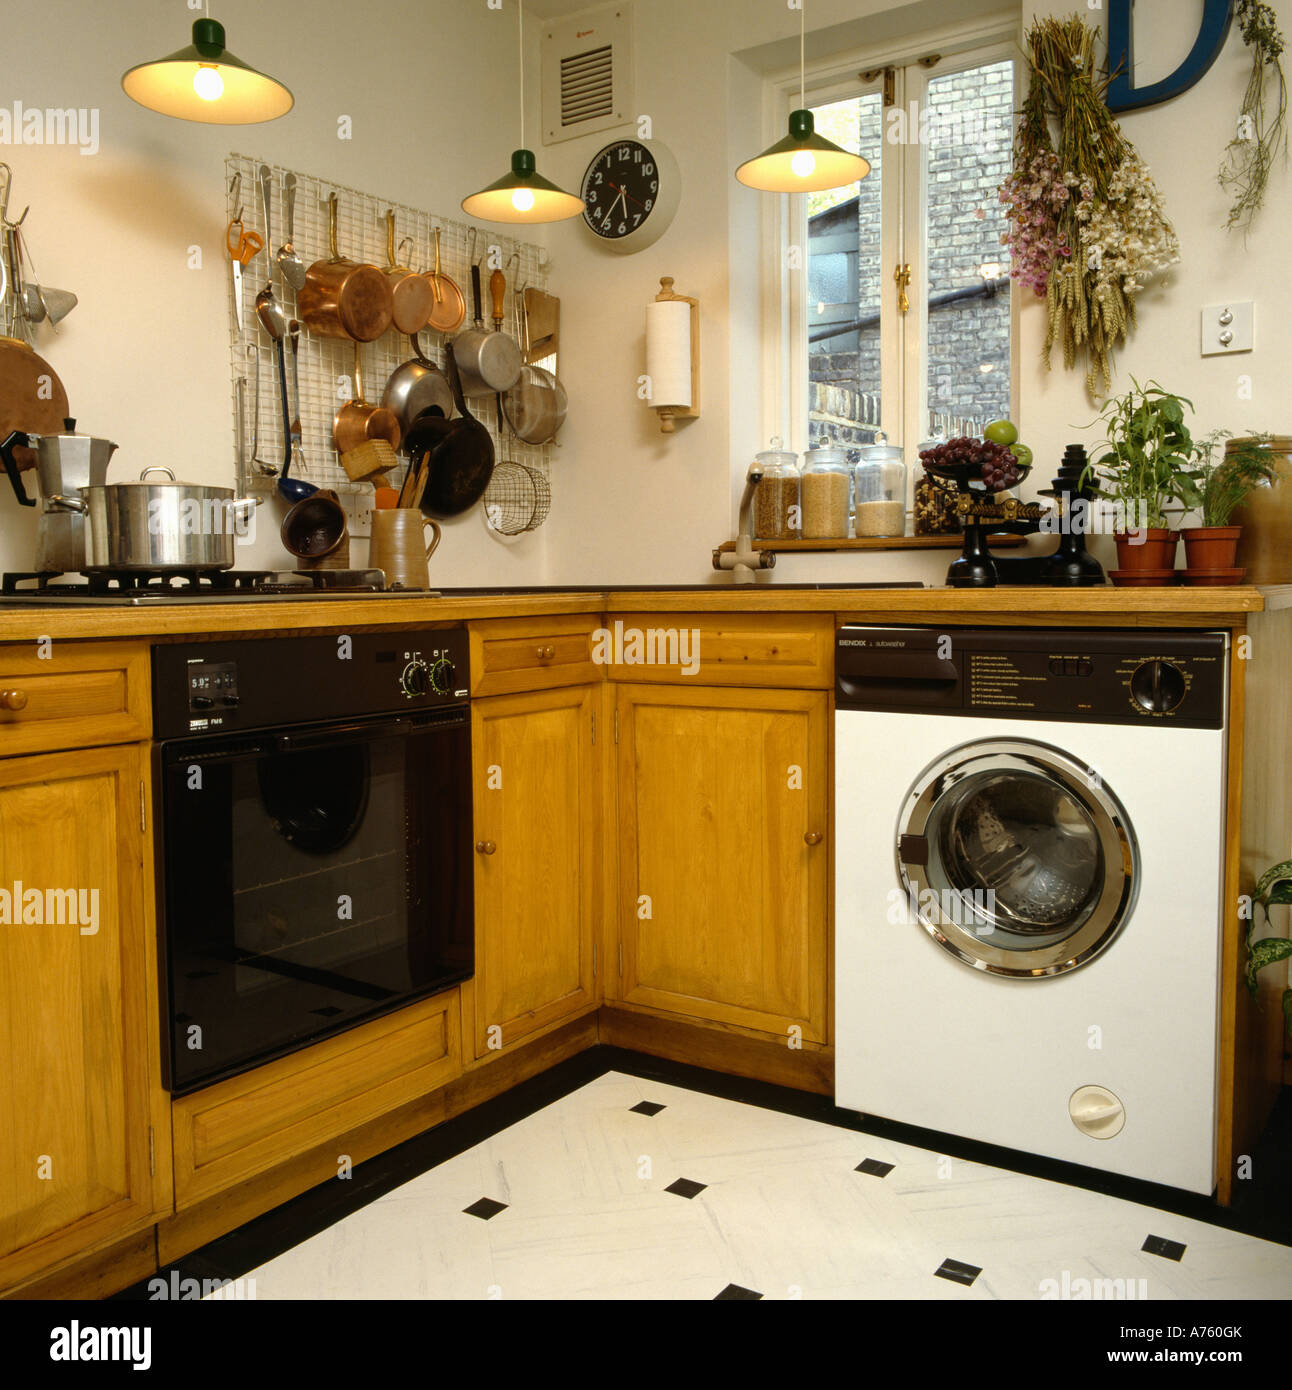 Backofen und Waschmaschine in kleine Küche Stockfotografie - Alamy